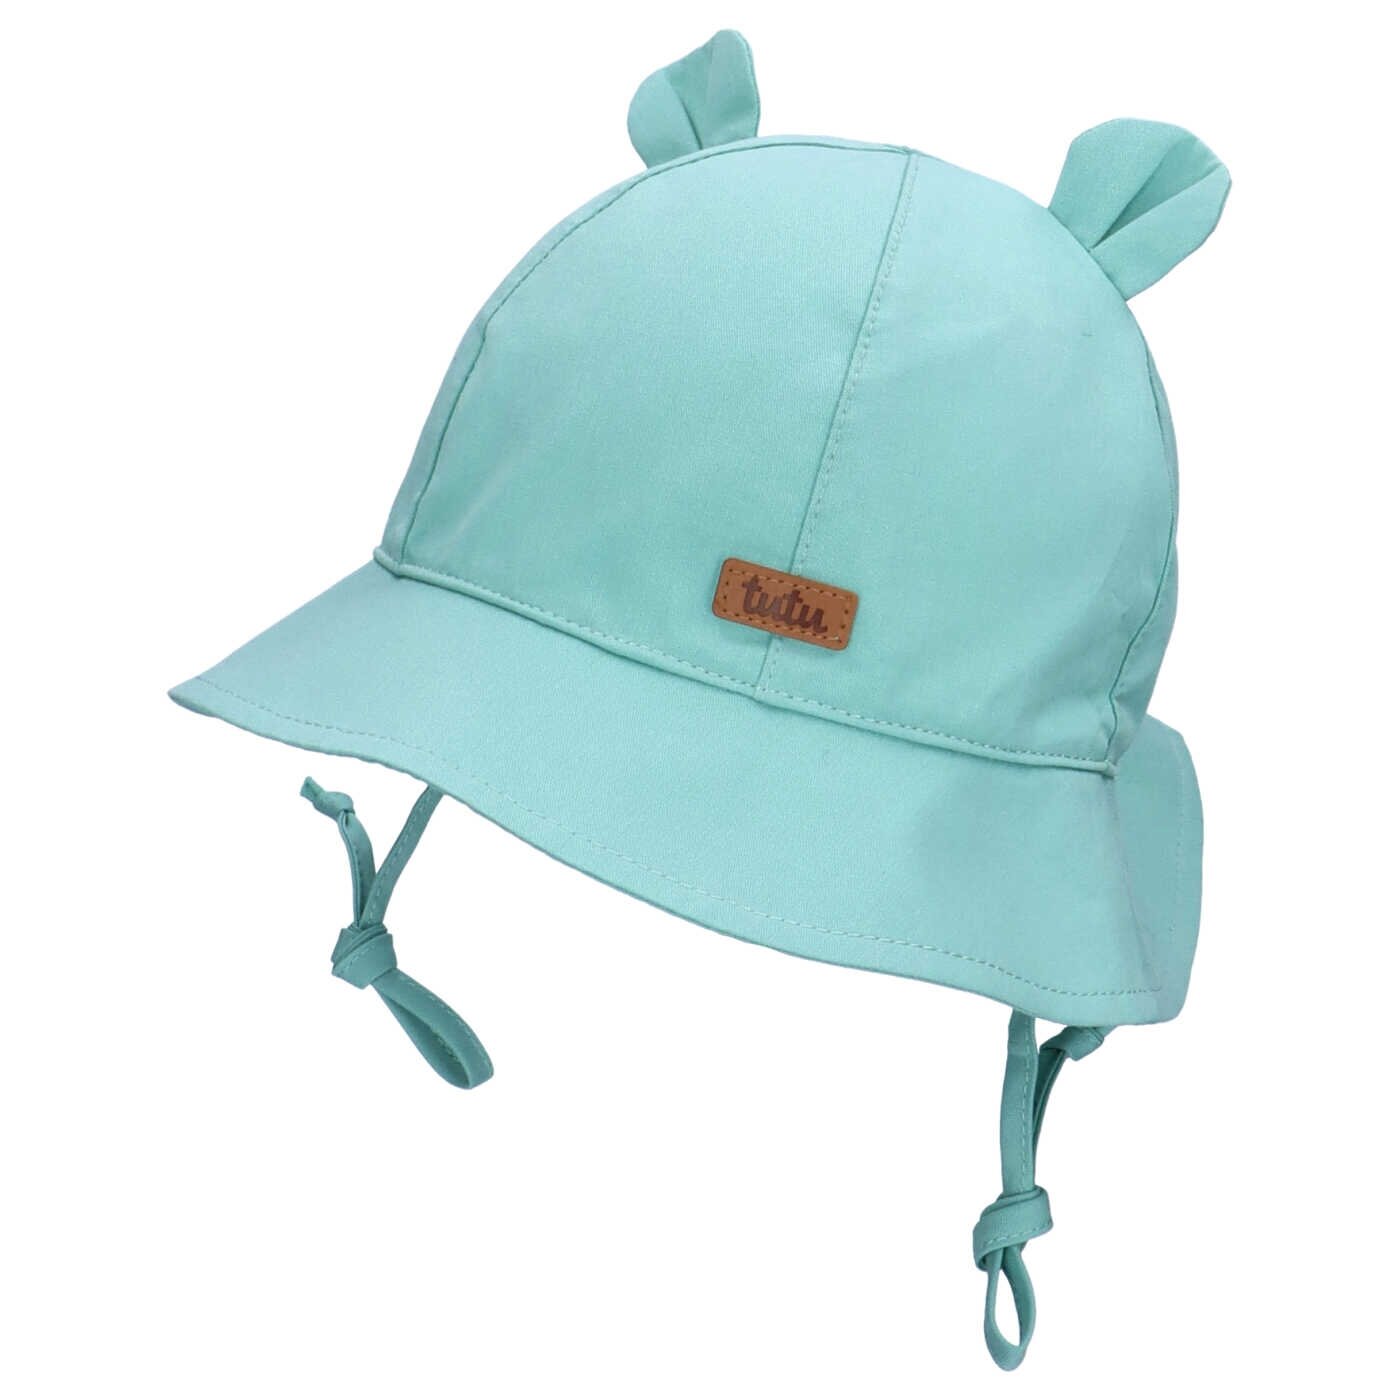 TuTu kepurė-panama su ausytėmis